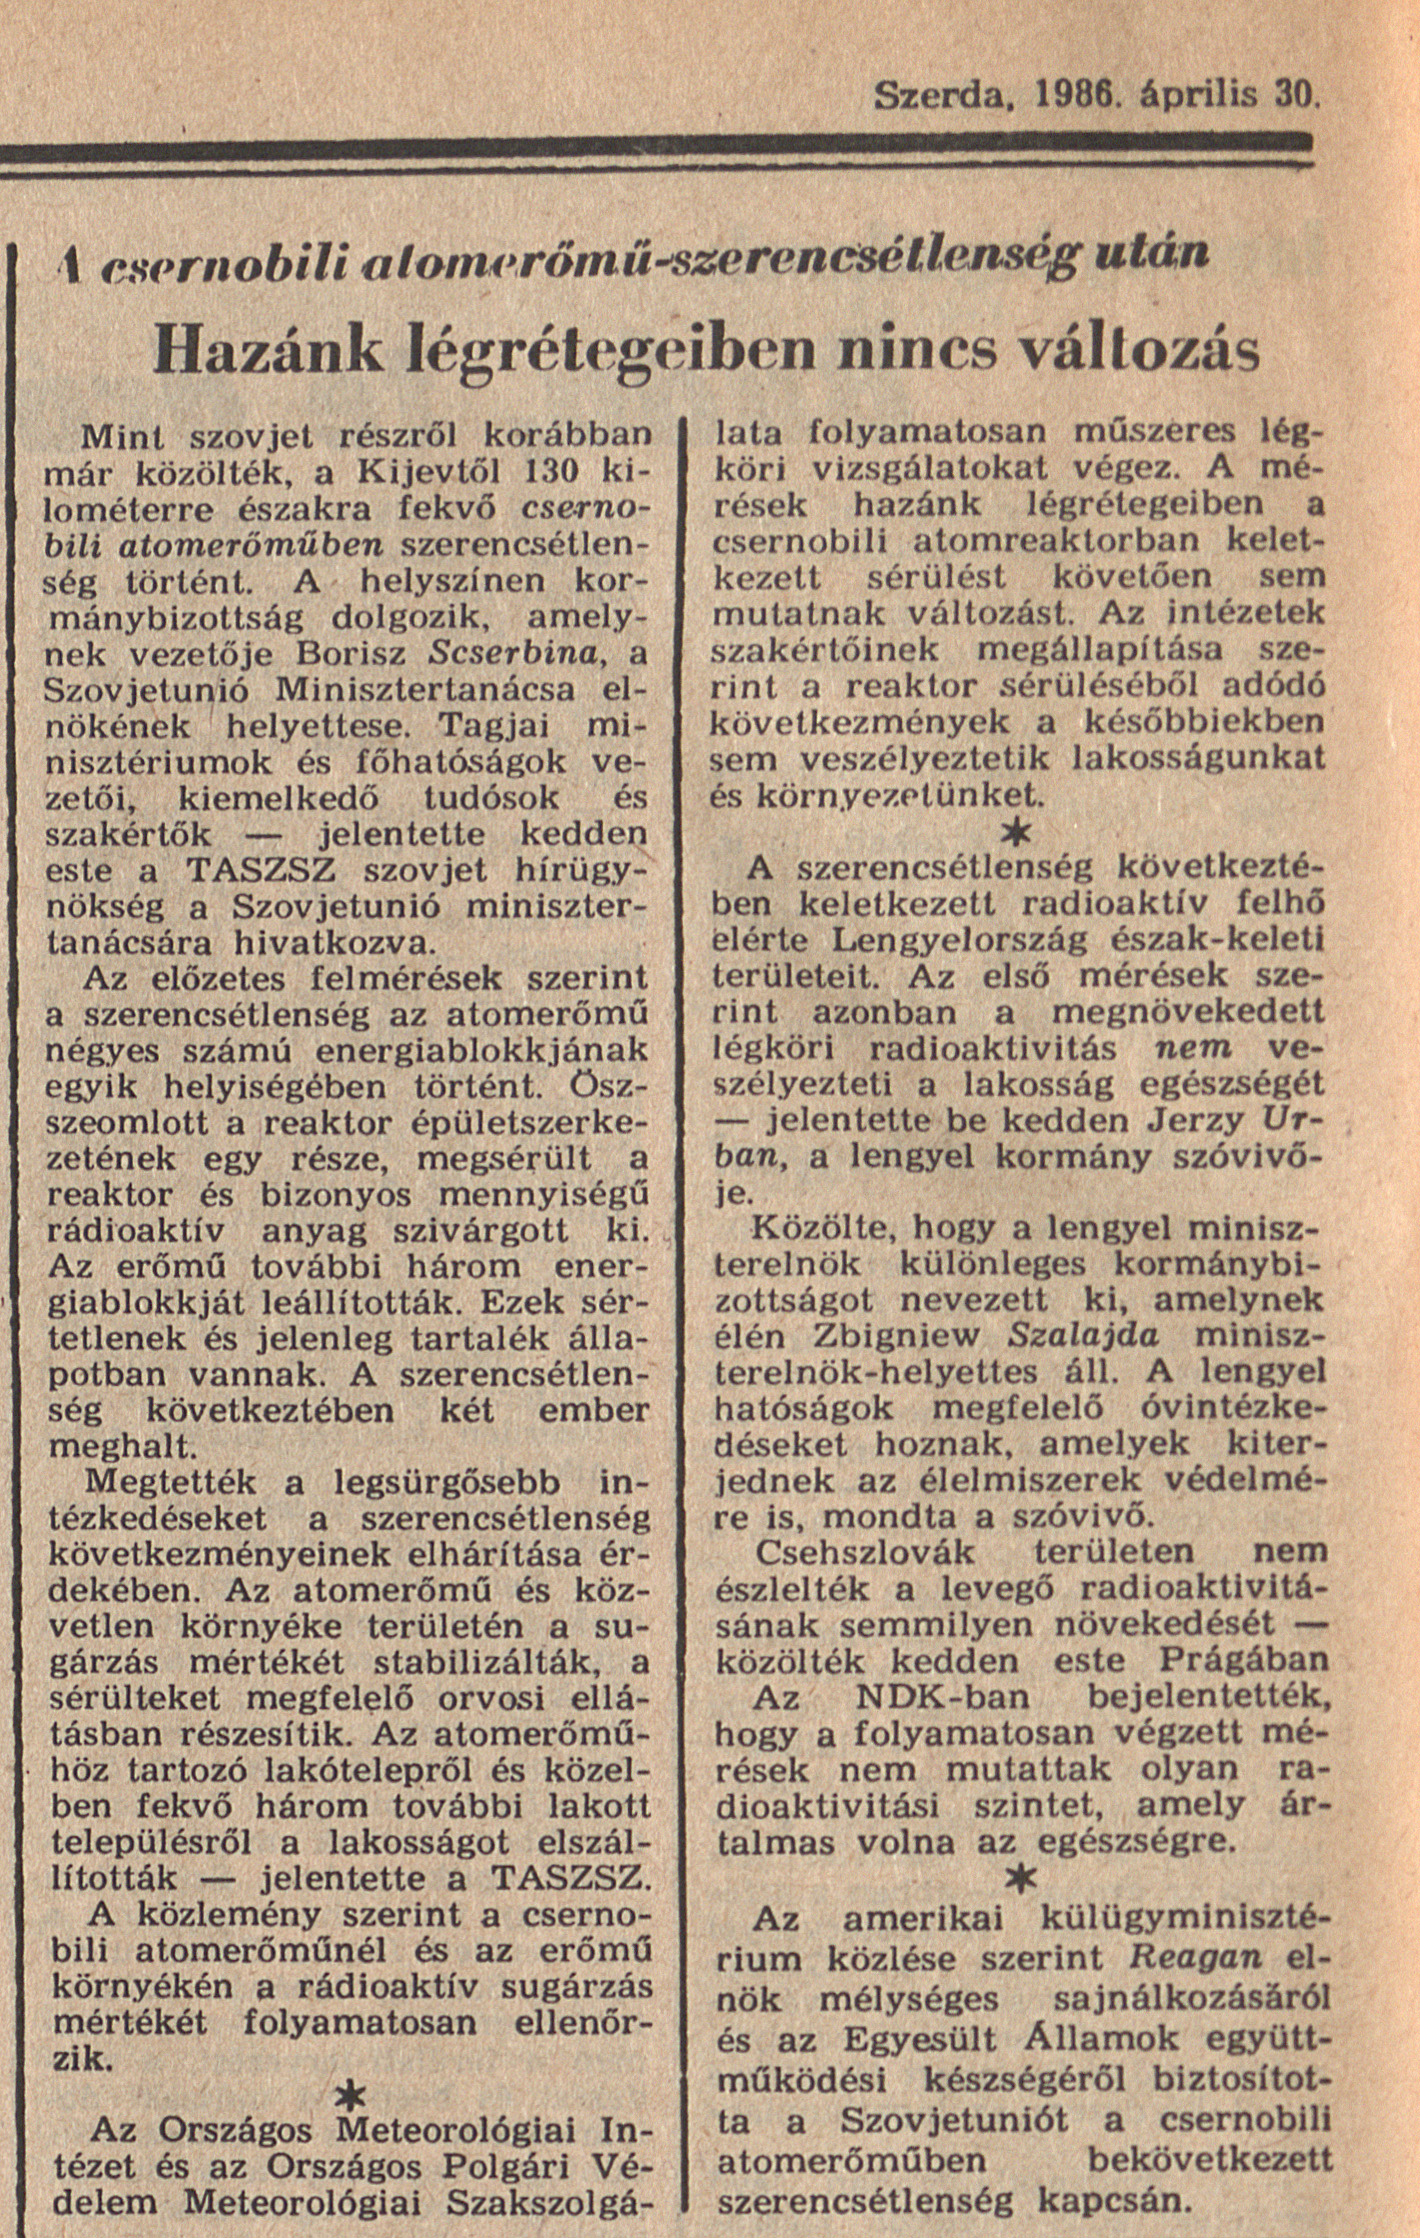 Magyar Nemzet 6. oldal. 1986. április 30. OSZK Törzsgyűjtemény